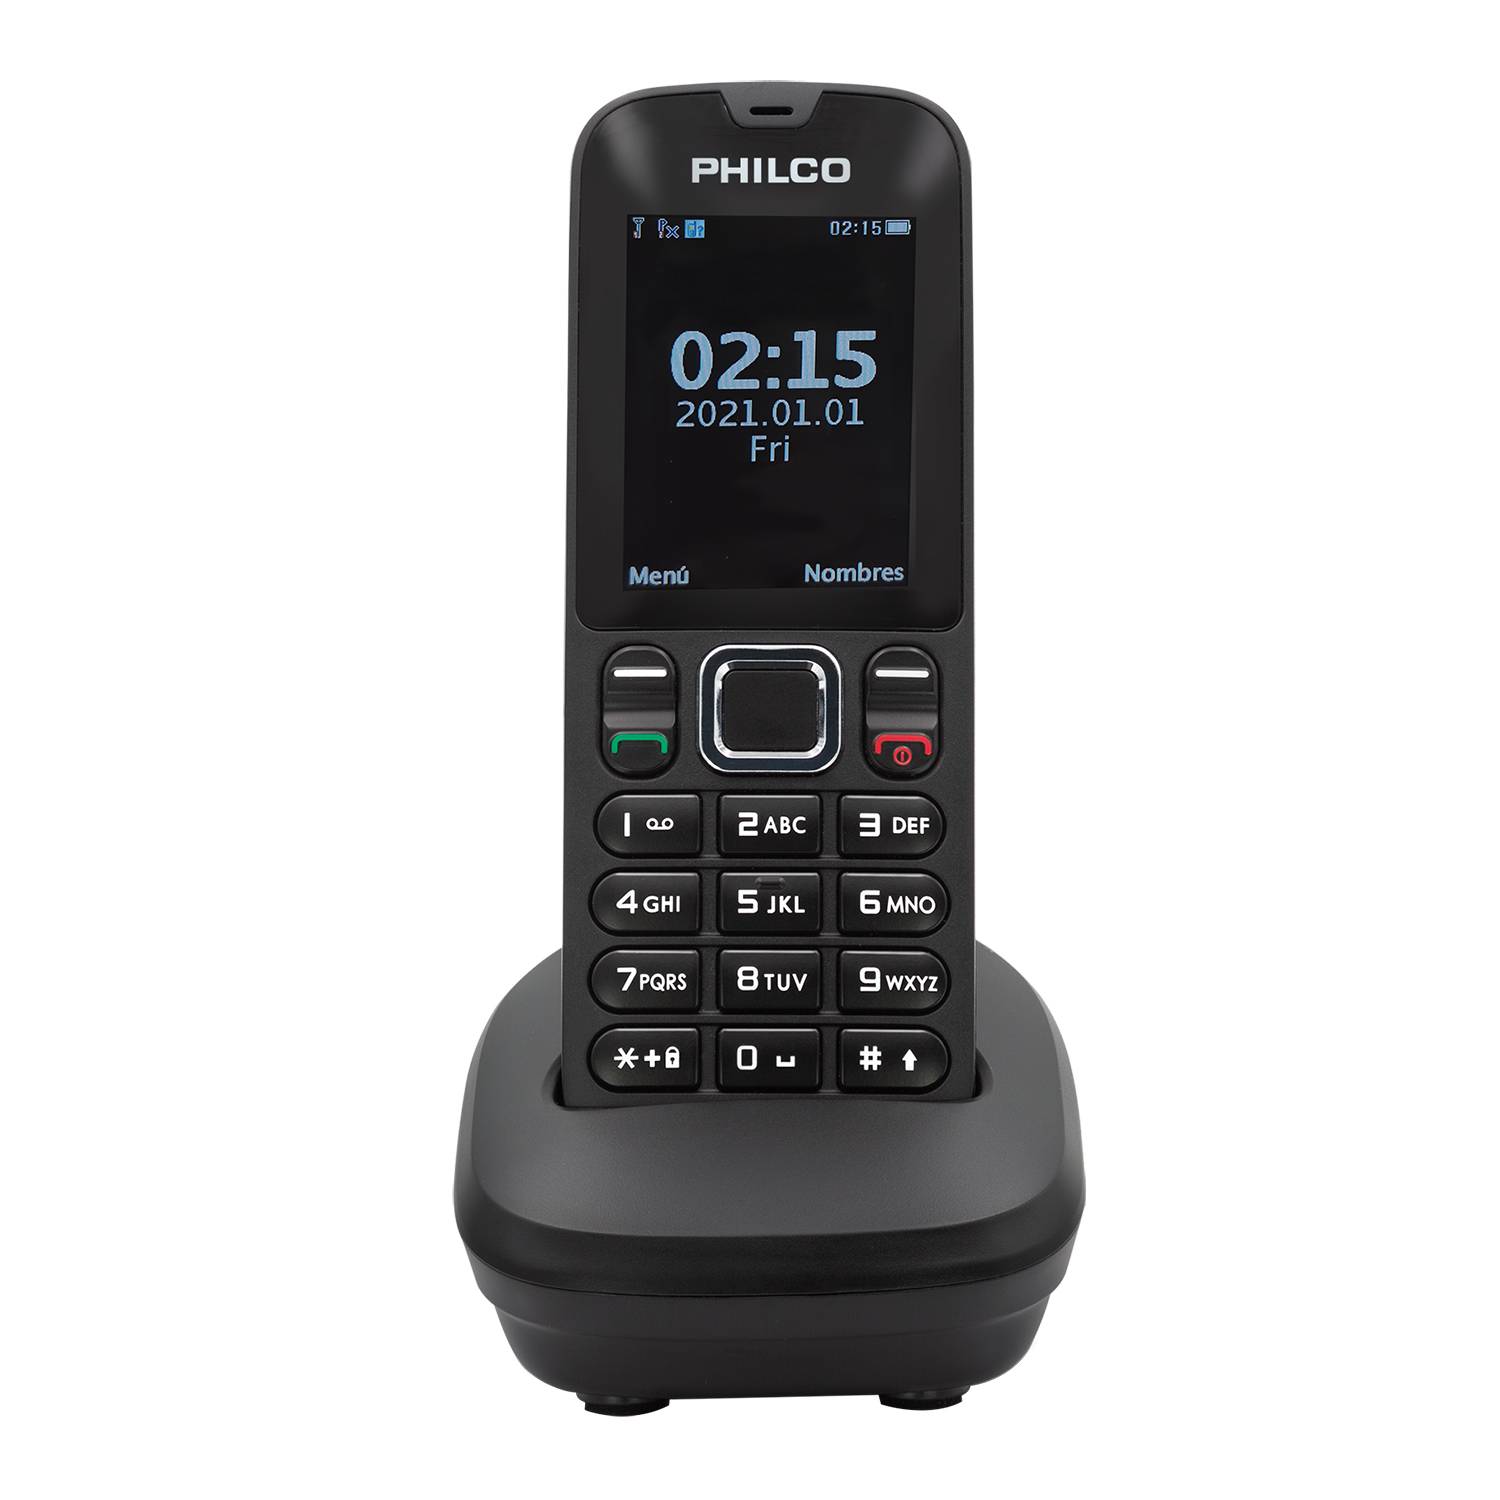 PHILCO TELÉFONO INALÁMBRICO 3G DUAL SIM CARD PHILCO OPEN BOX